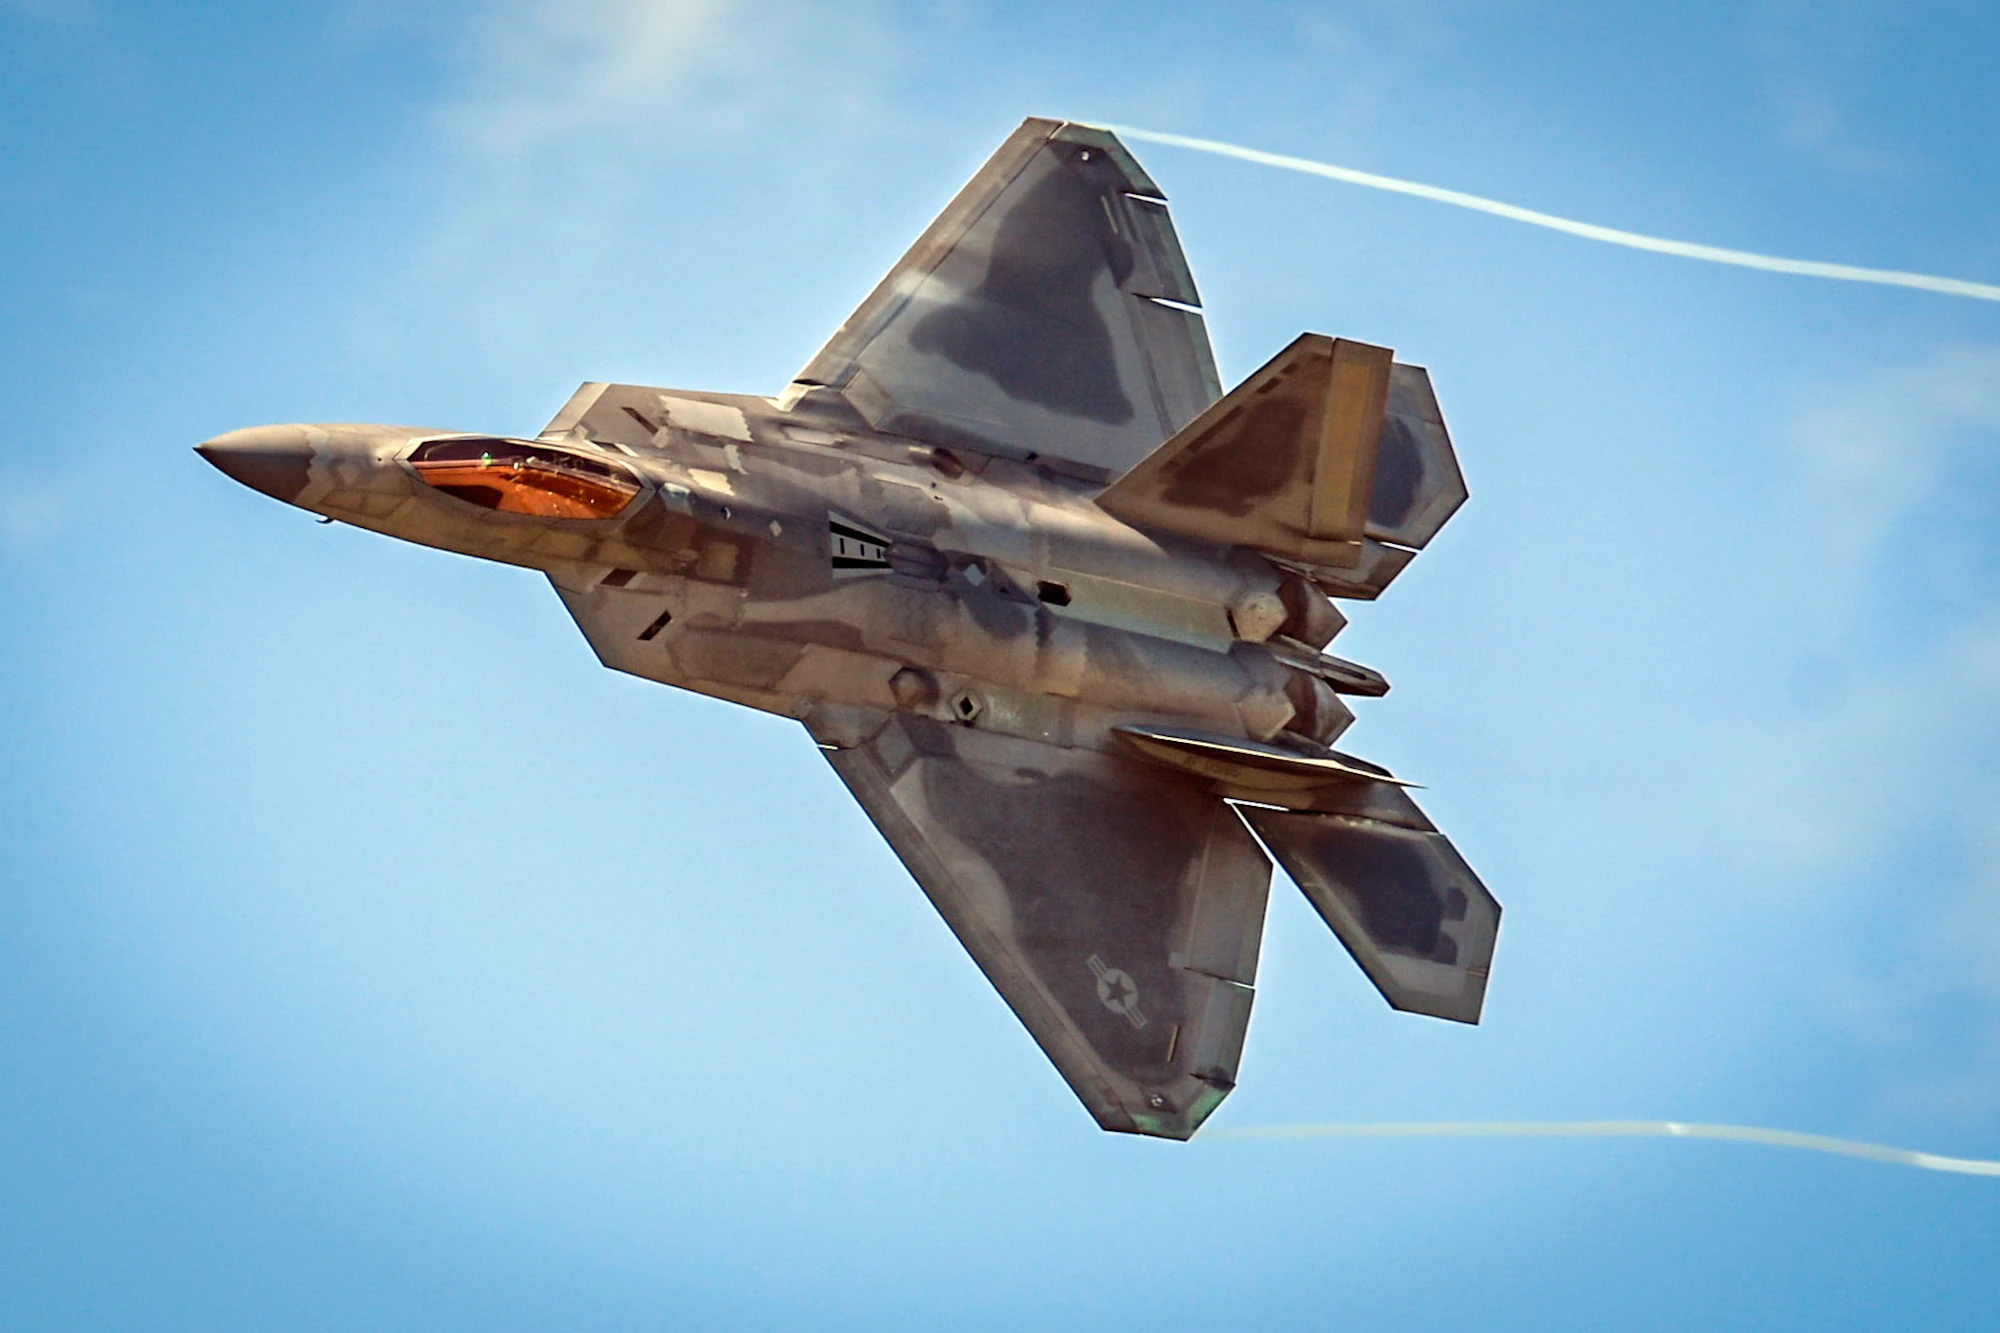 Οι ΗΠΑ στέλνουν F-22 στην Μέση Ανατολή επικαλούμενες «μη ασφαλείς ενέργειες» ρωσικών αεροσκαφών